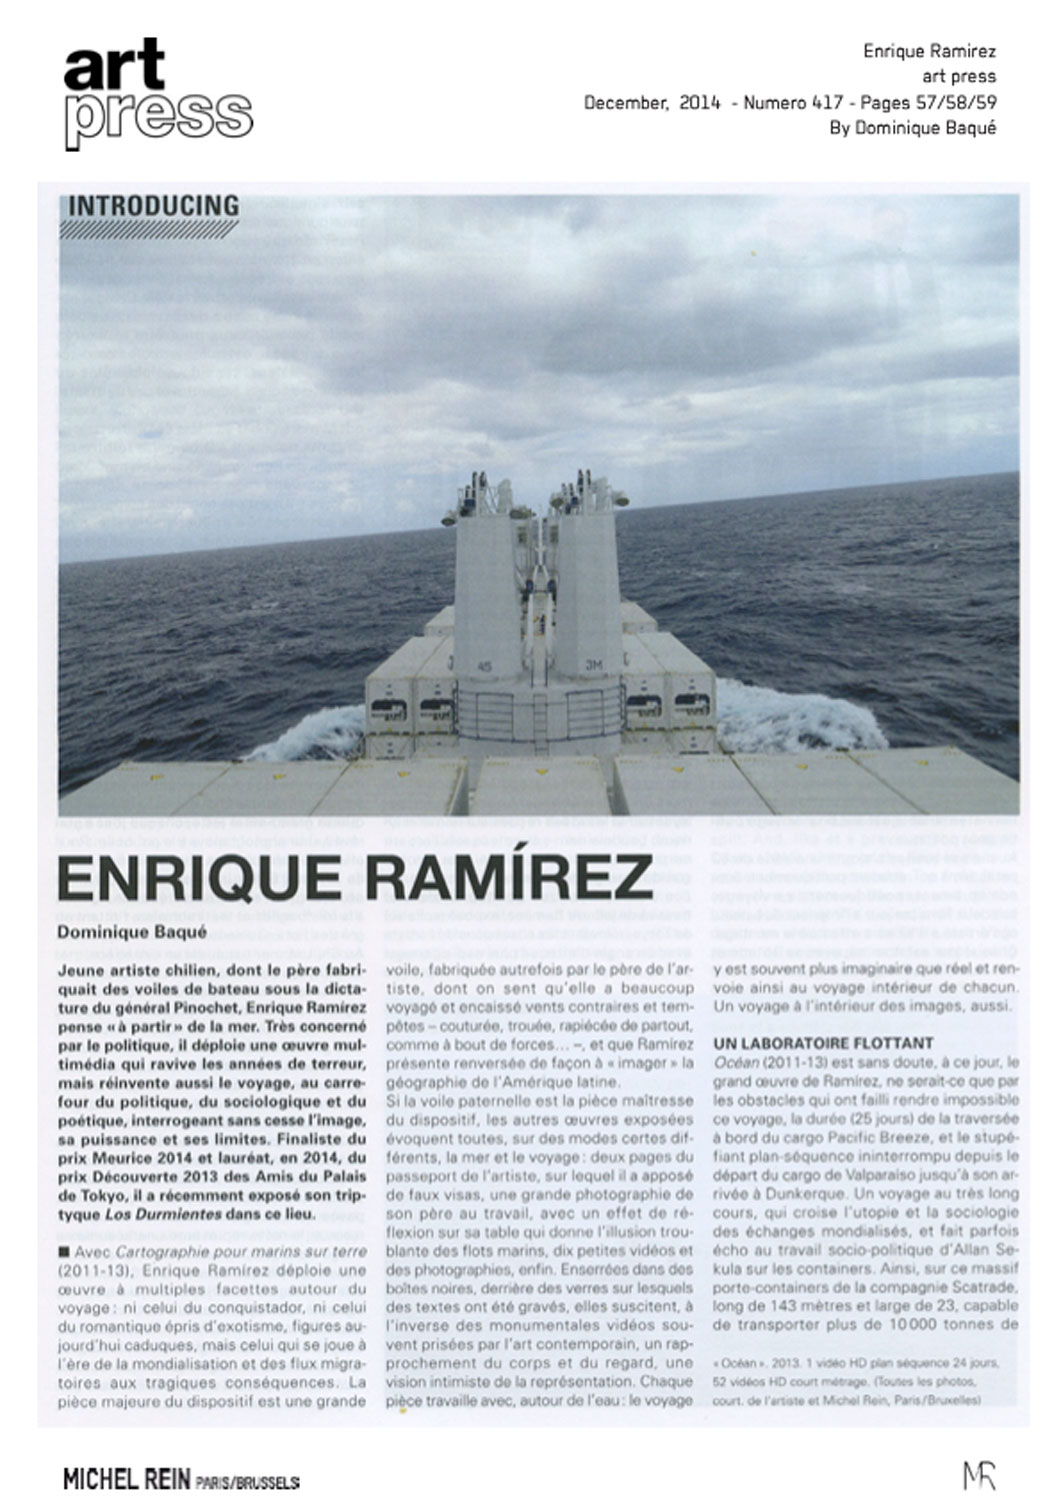 Enrique Ramrez - Art press